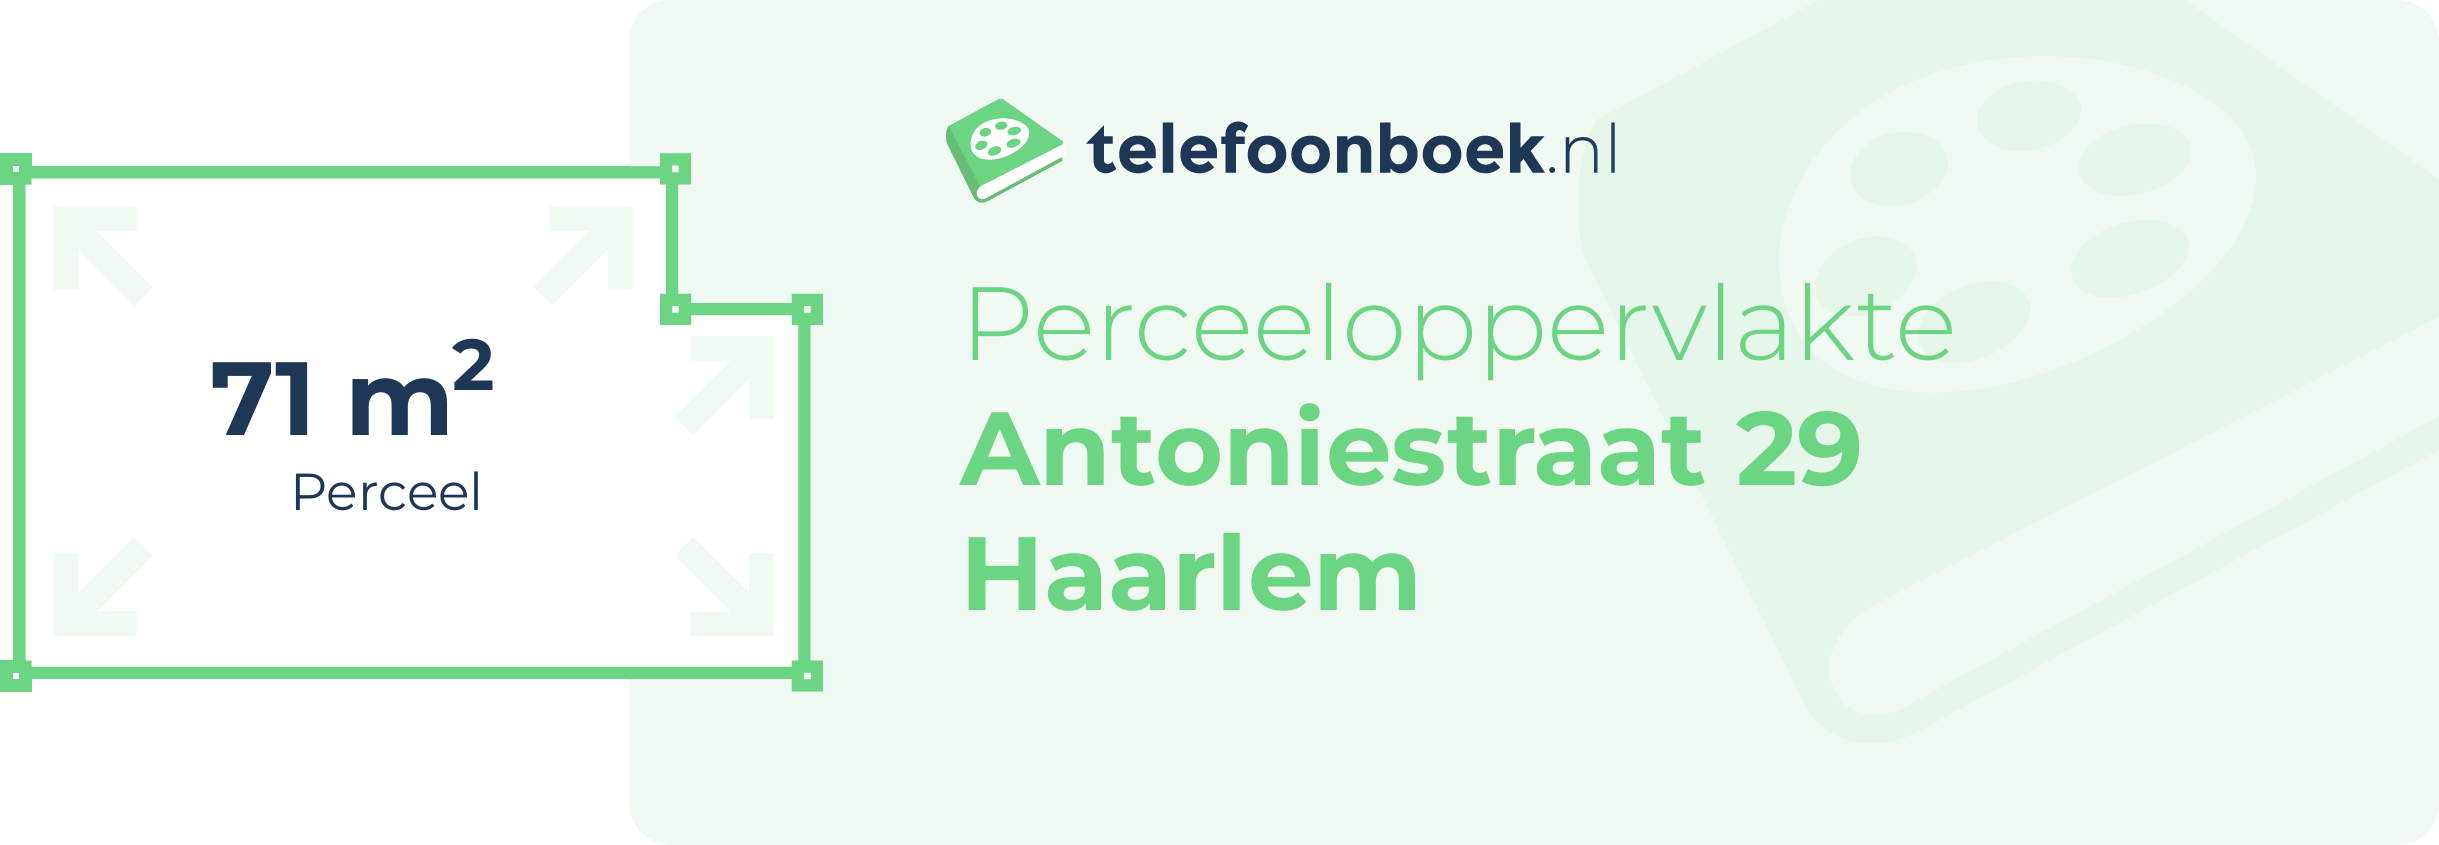 Perceeloppervlakte Antoniestraat 29 Haarlem